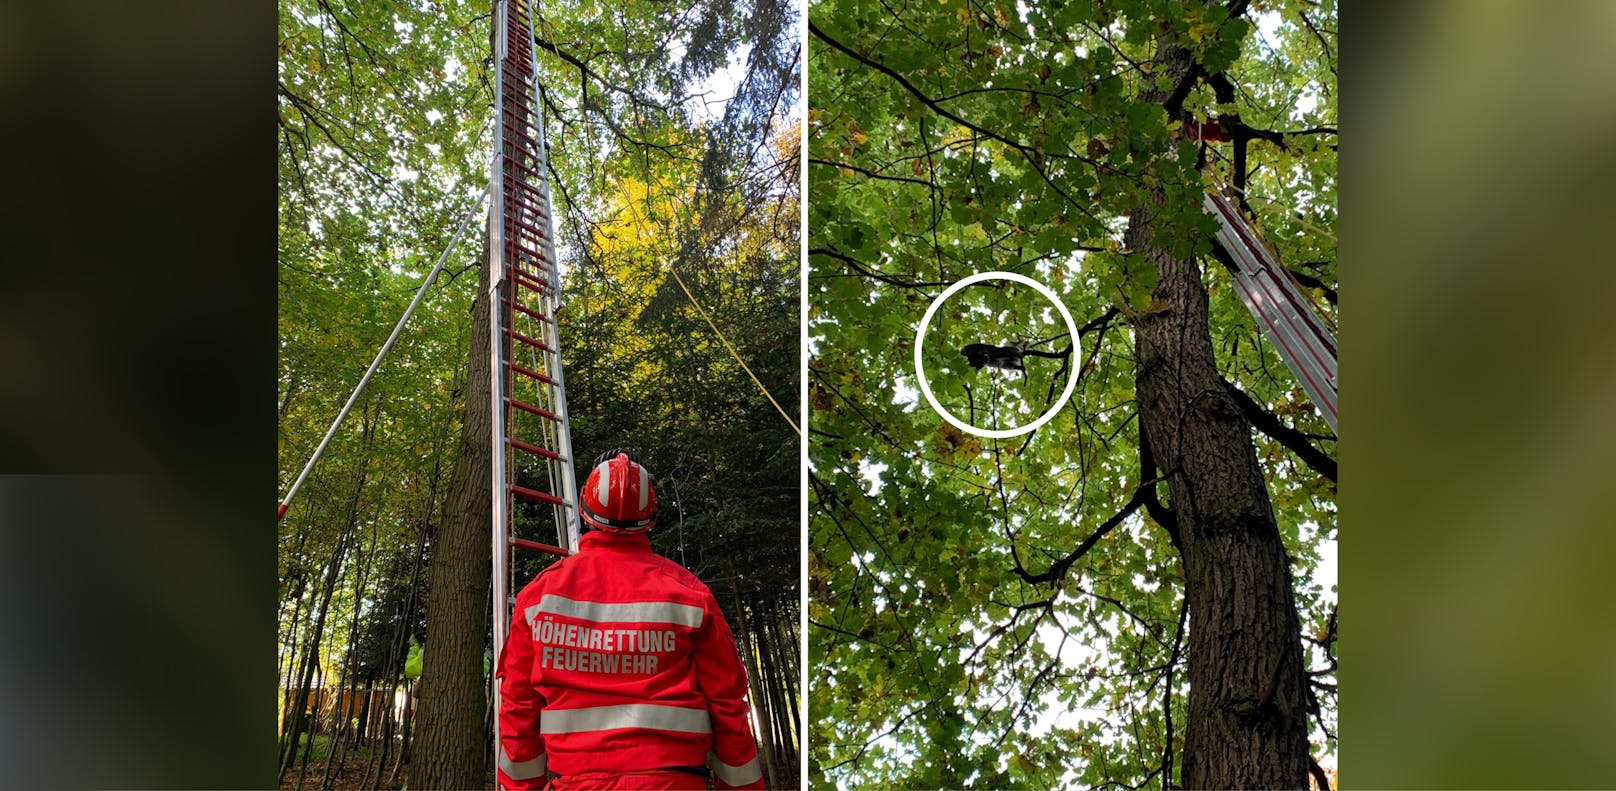 Der Kater musste von der Feuerwehr von einem Baum in 15 Meter Höhe befreit werden.